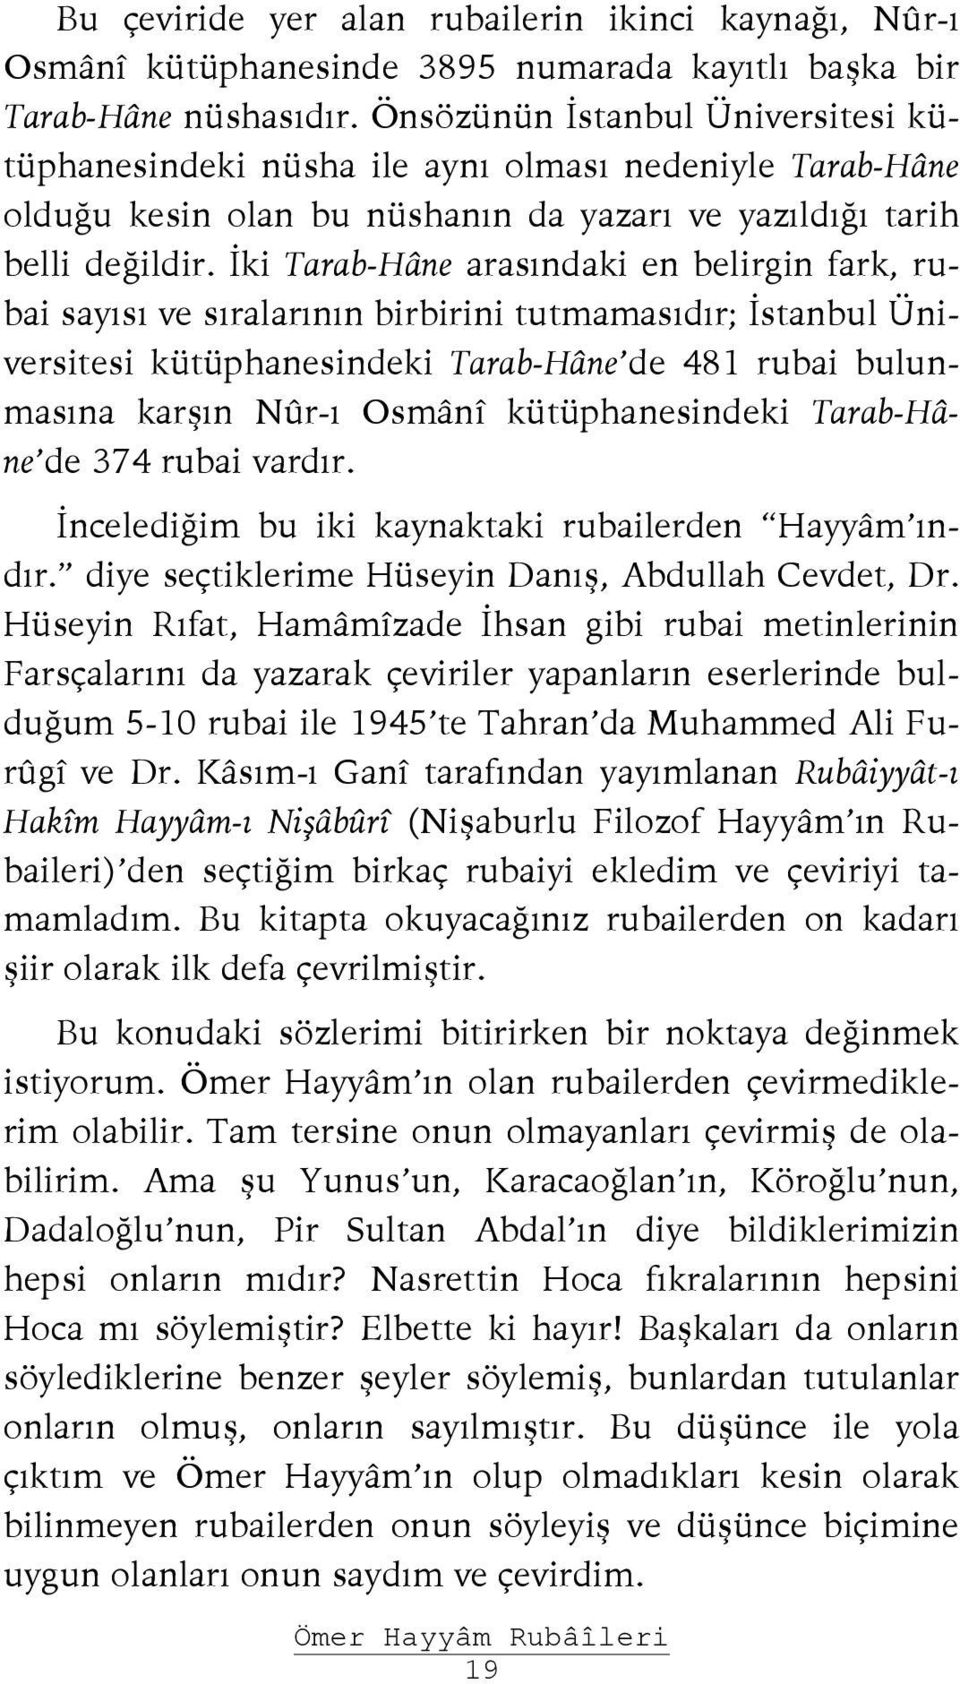 İki Tarab-Hâne arasındaki en belirgin fark, rubai sayısı ve sıralarının birbirini tutmamasıdır; İstanbul Üniversitesi kütüphanesindeki Tarab-Hâne de 481 rubai bulunmasına karşın Nûr-ı Osmânî